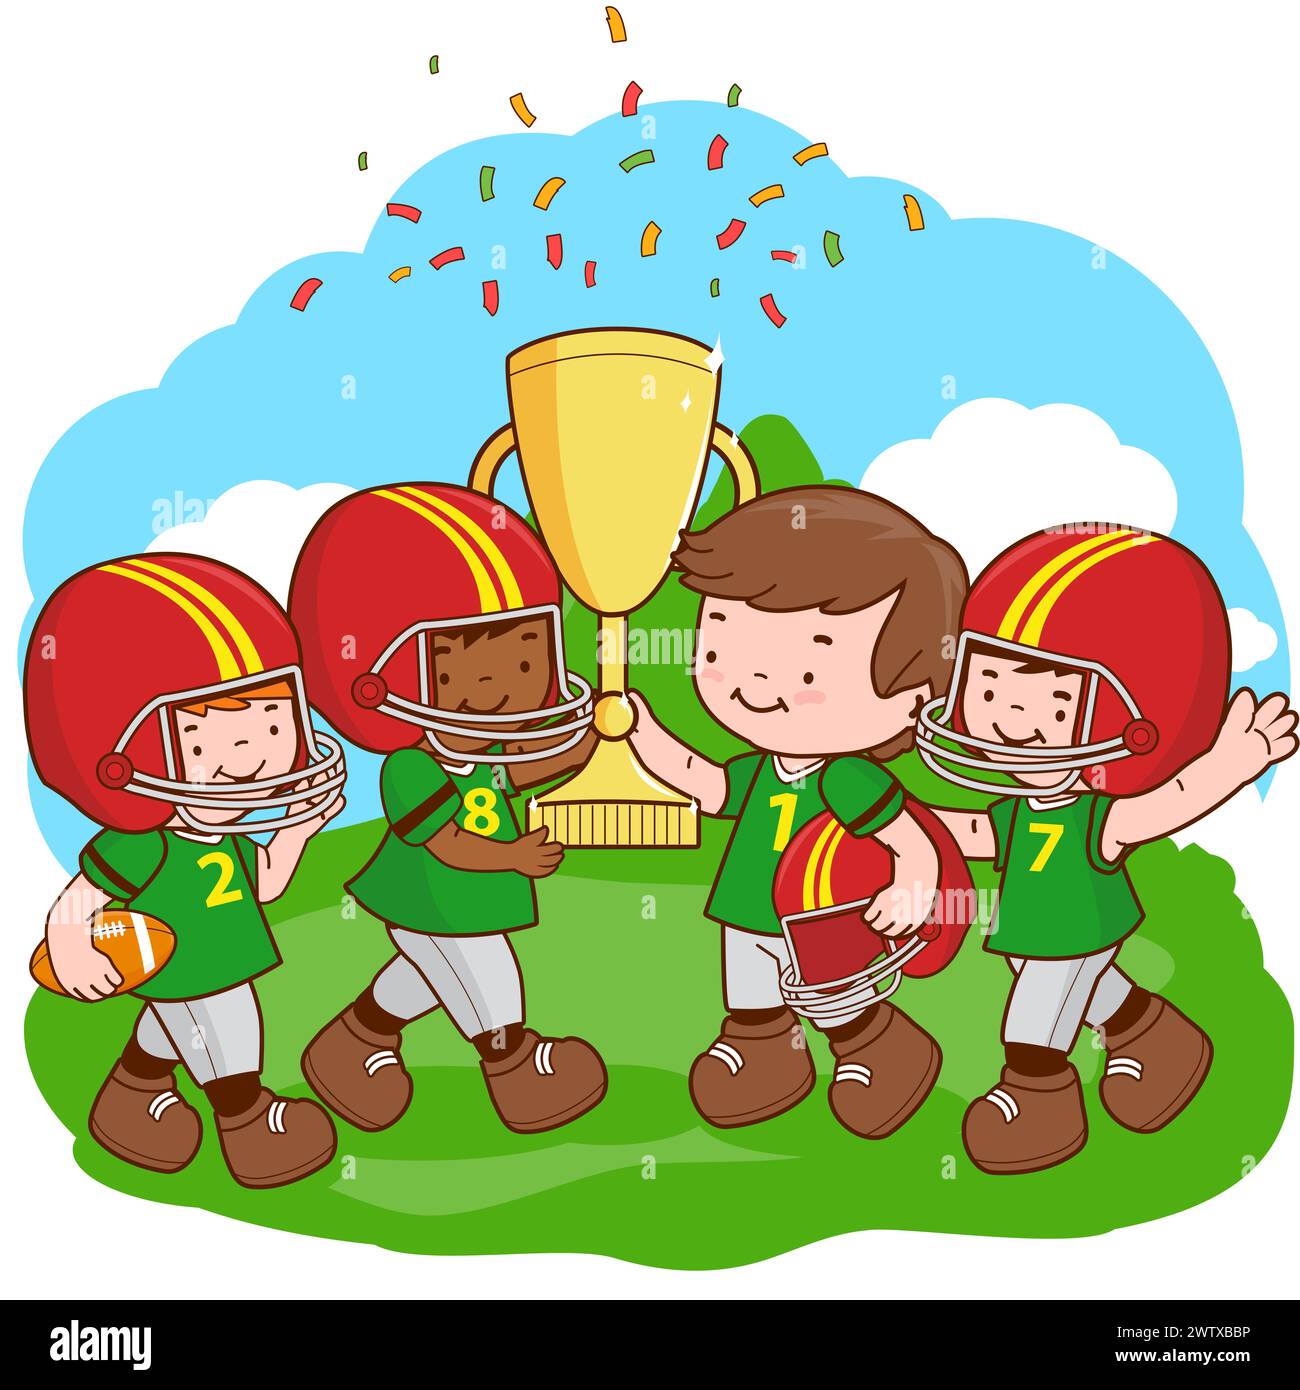 Les enfants joueurs de rugby acclament et tiennent un trophée d'or sur le terrain de football. Banque D'Images